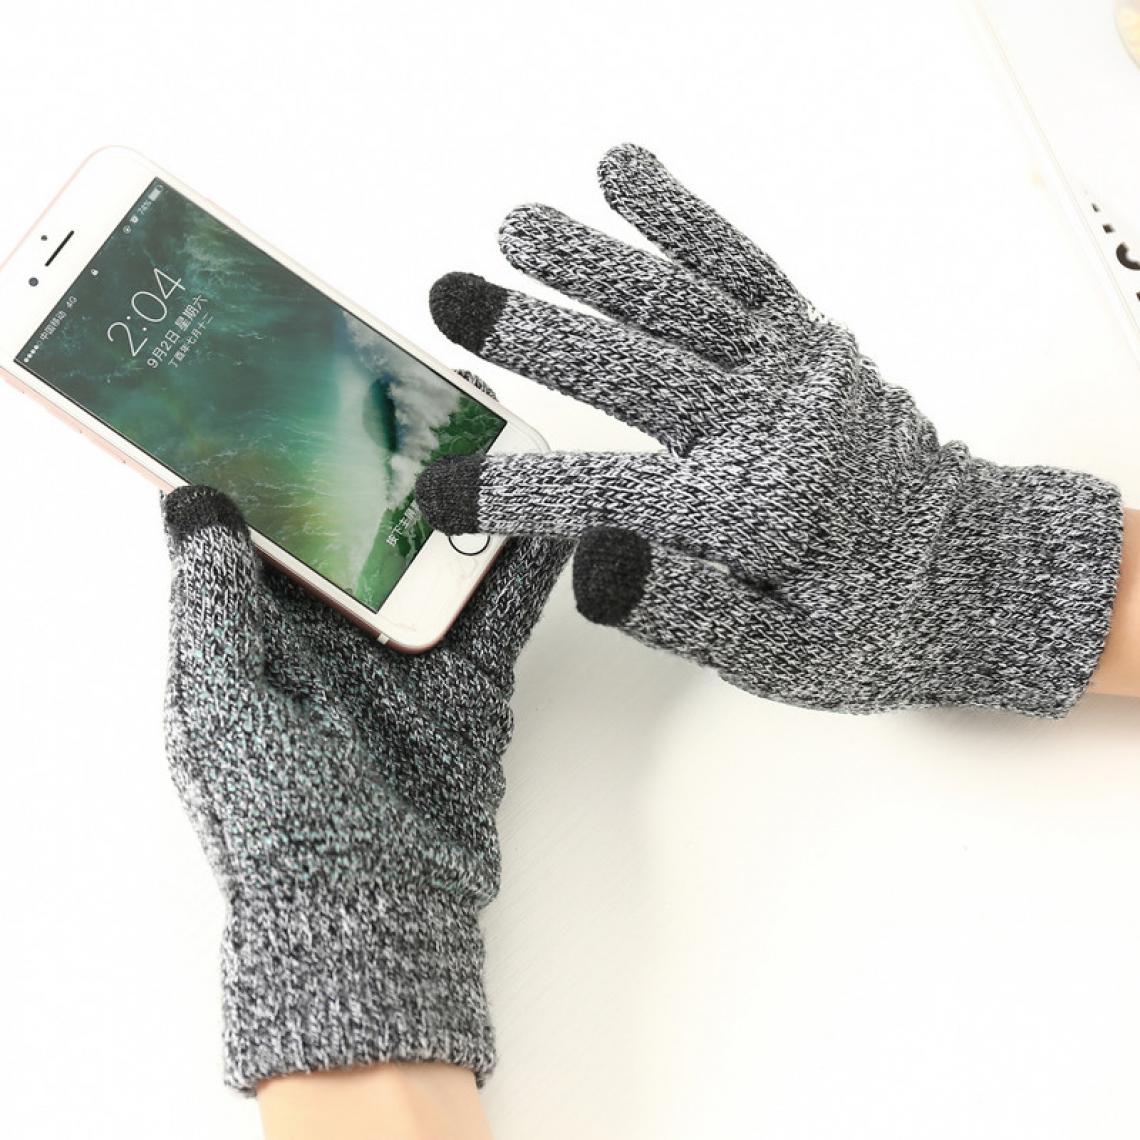 Shot - Gants Homme tactiles pour HUAWEI Y6s Smartphone Taille M 3 doigts Hiver (GRIS) - Autres accessoires smartphone